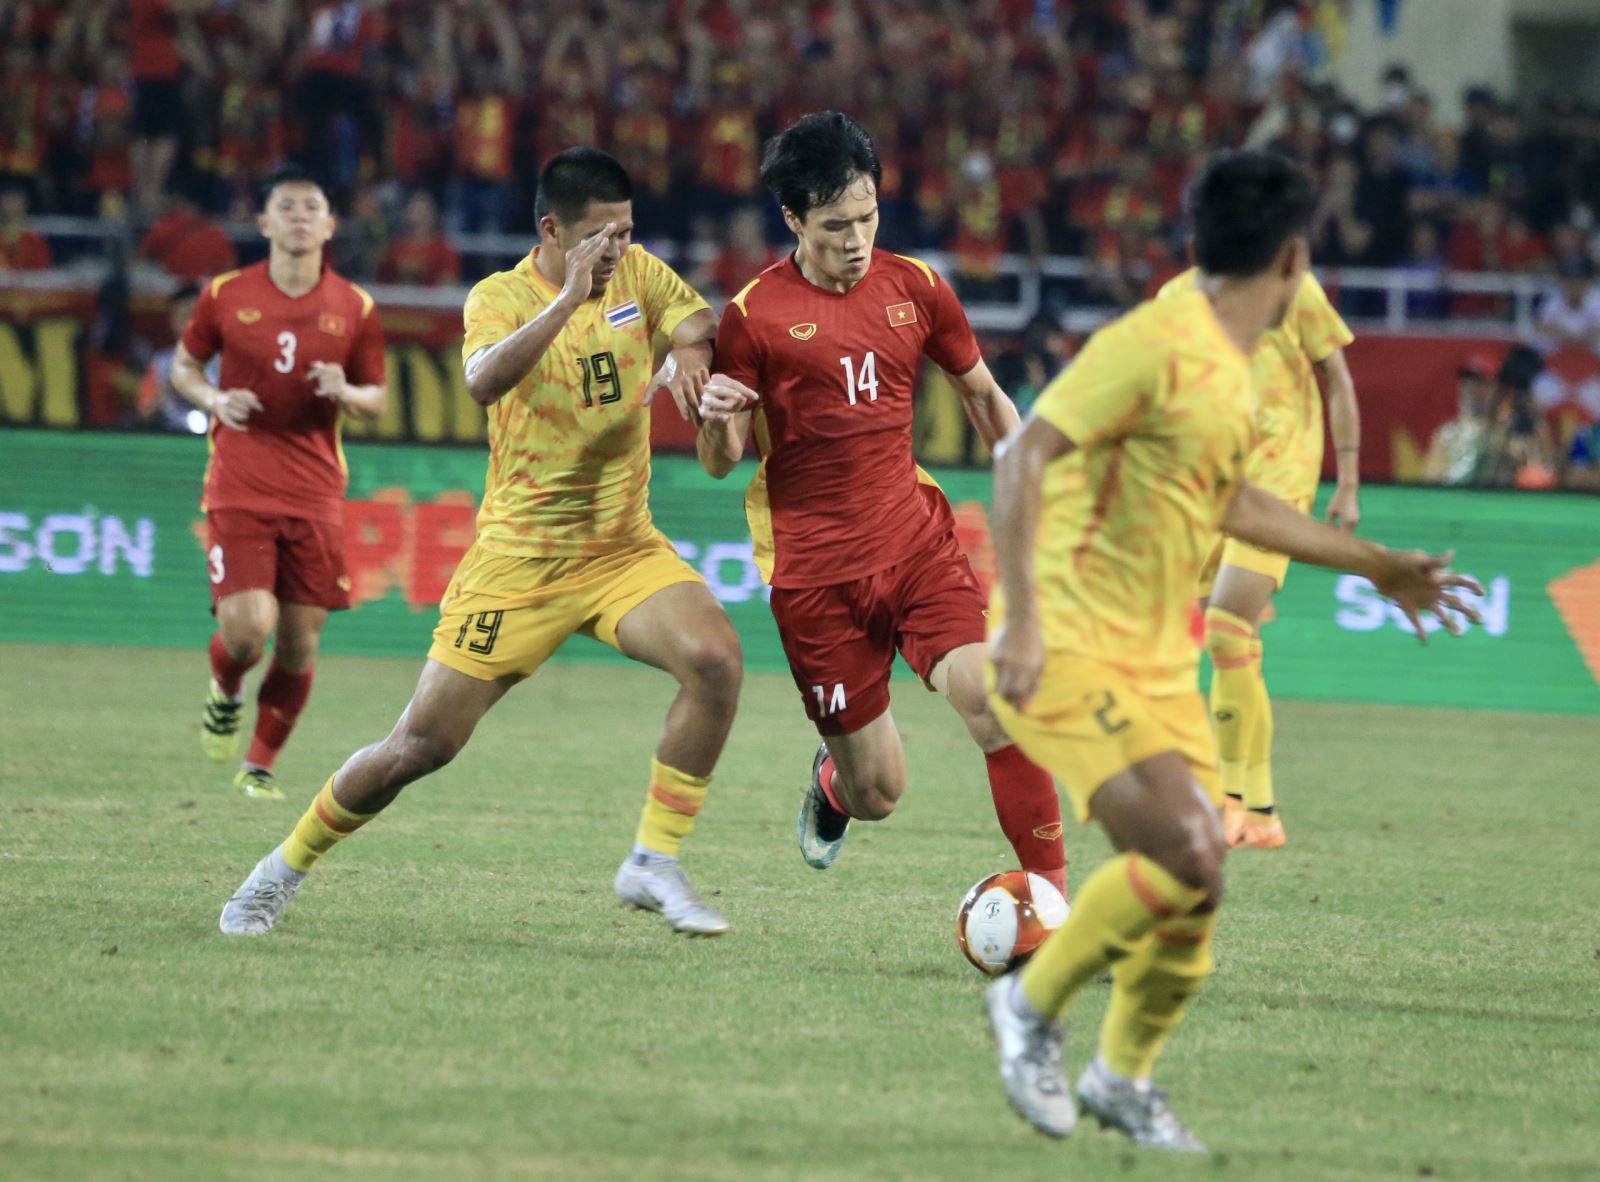 KẾT QUẢ bóng đá U23 Việt Nam 1-0 U23 Thái Lan, chung kết SEA Games 31, Cập nhật kết quả bóng đá, bảng xếp hạng, lịch thi đấu và trực tiếp bóng đá SEA Games 31